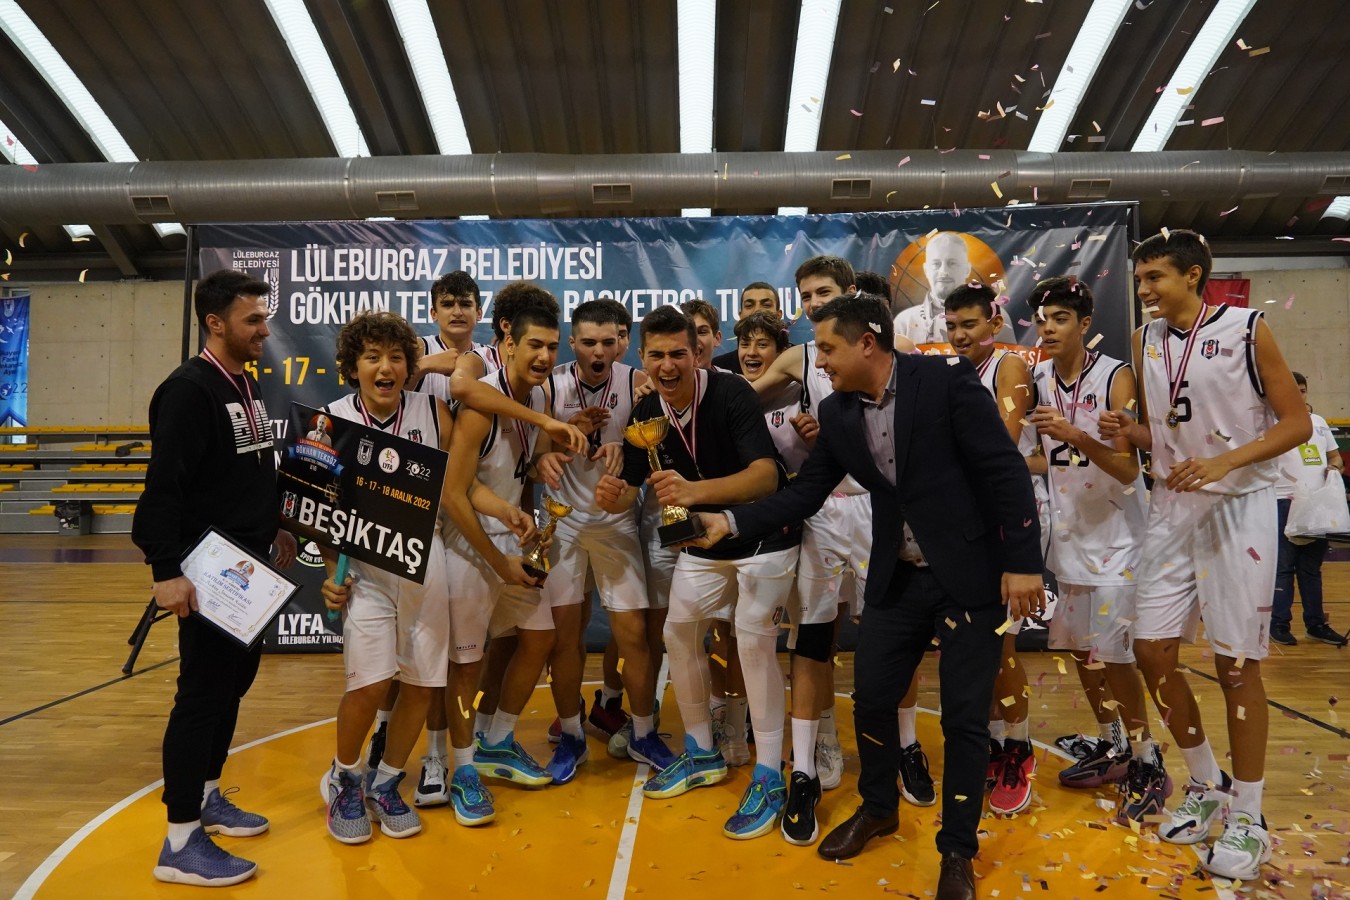 Gökhan Teksöz Basketbol Turnuvası sona erdi! “Dev turnuvada şampiyon Beşiktaş”